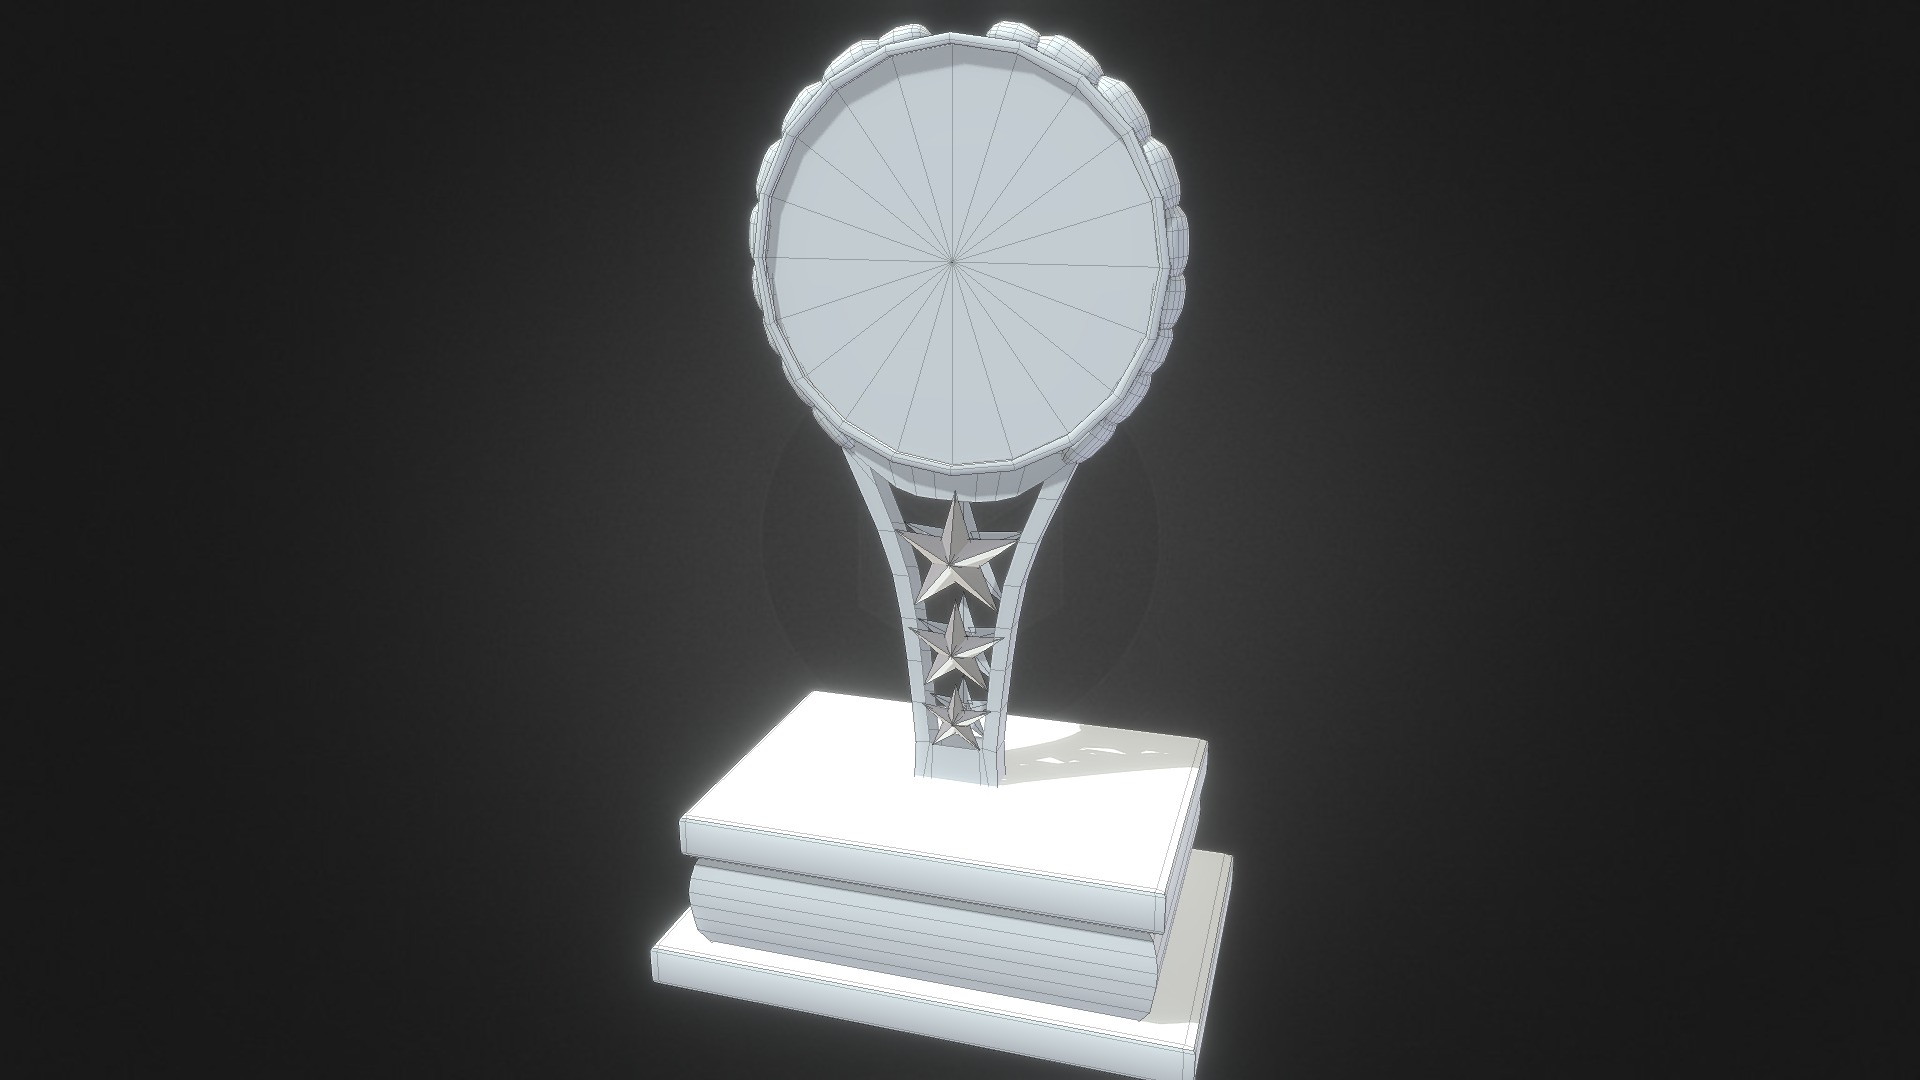 3D model Art Trophy untextured - This is a 3D model of the Art Trophy untextured. The 3D model is about a trophy on a pedestal.